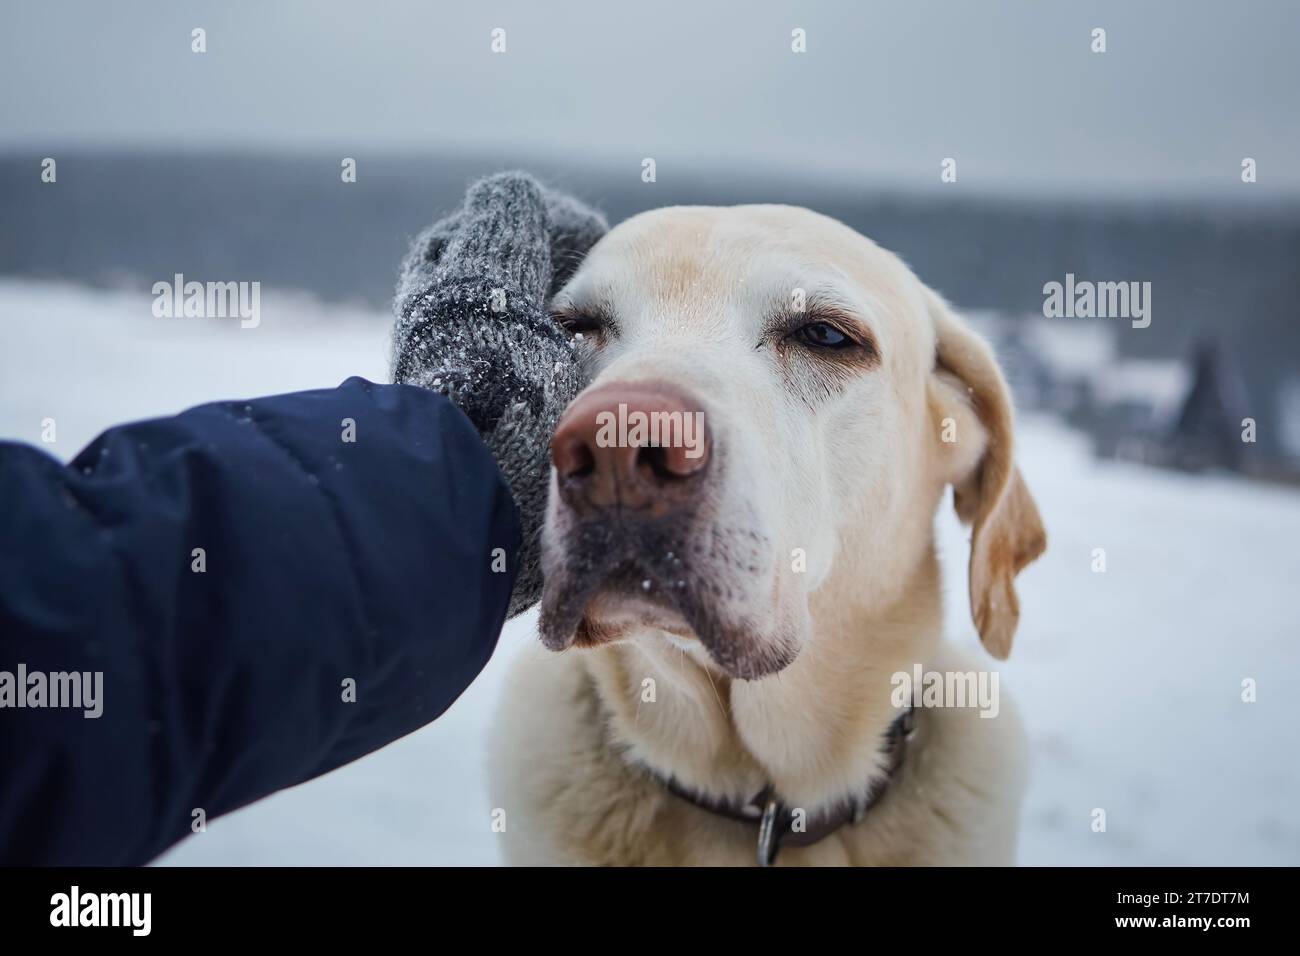 Homme en gants tricotés caressant son vieux chien le jour froid de l'hiver. Fidèle labrador retriever dans un paysage enneigé avec son propriétaire. Banque D'Images